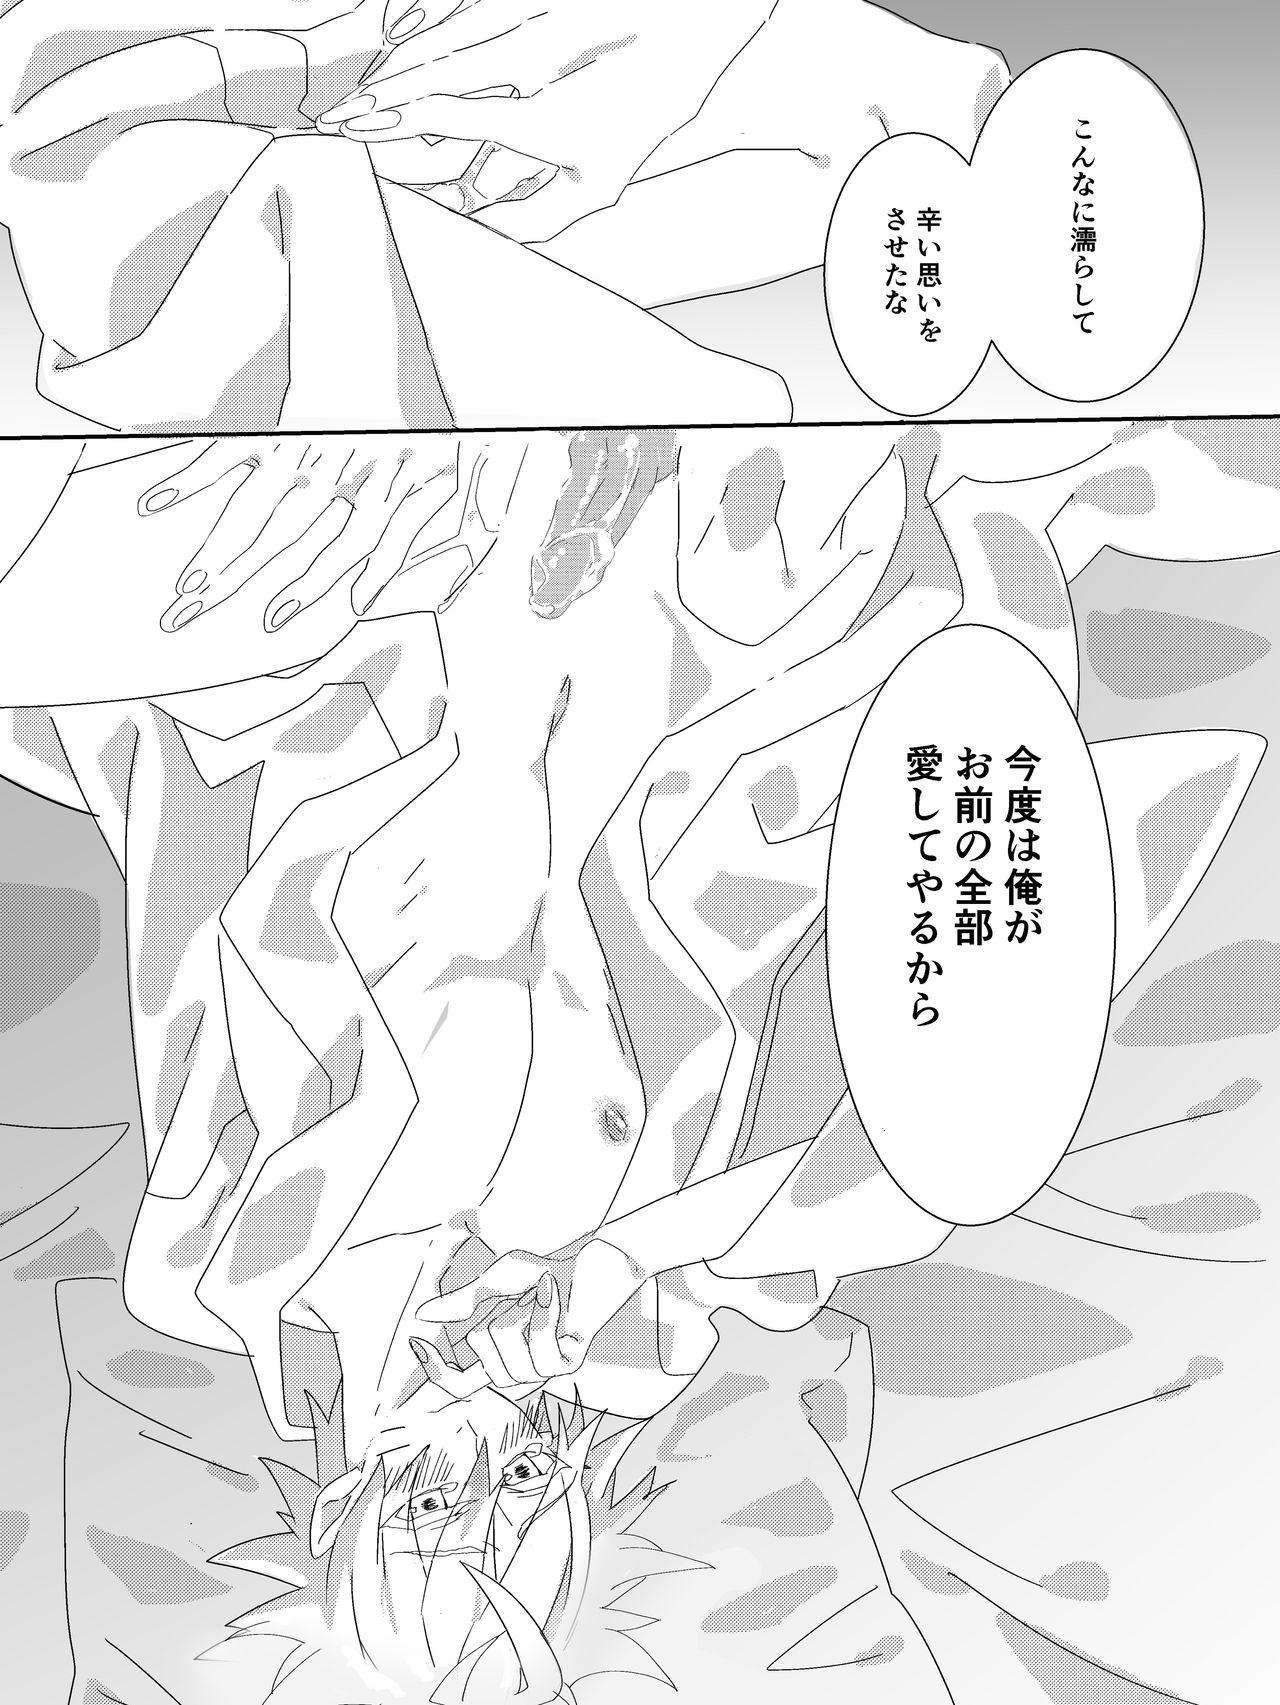 Tribbing Shigoto Kara Kaeru to Itsumo Naruto ga Hen na Fuku o Kite Stumble te Iru - Naruto Culos - Page 7